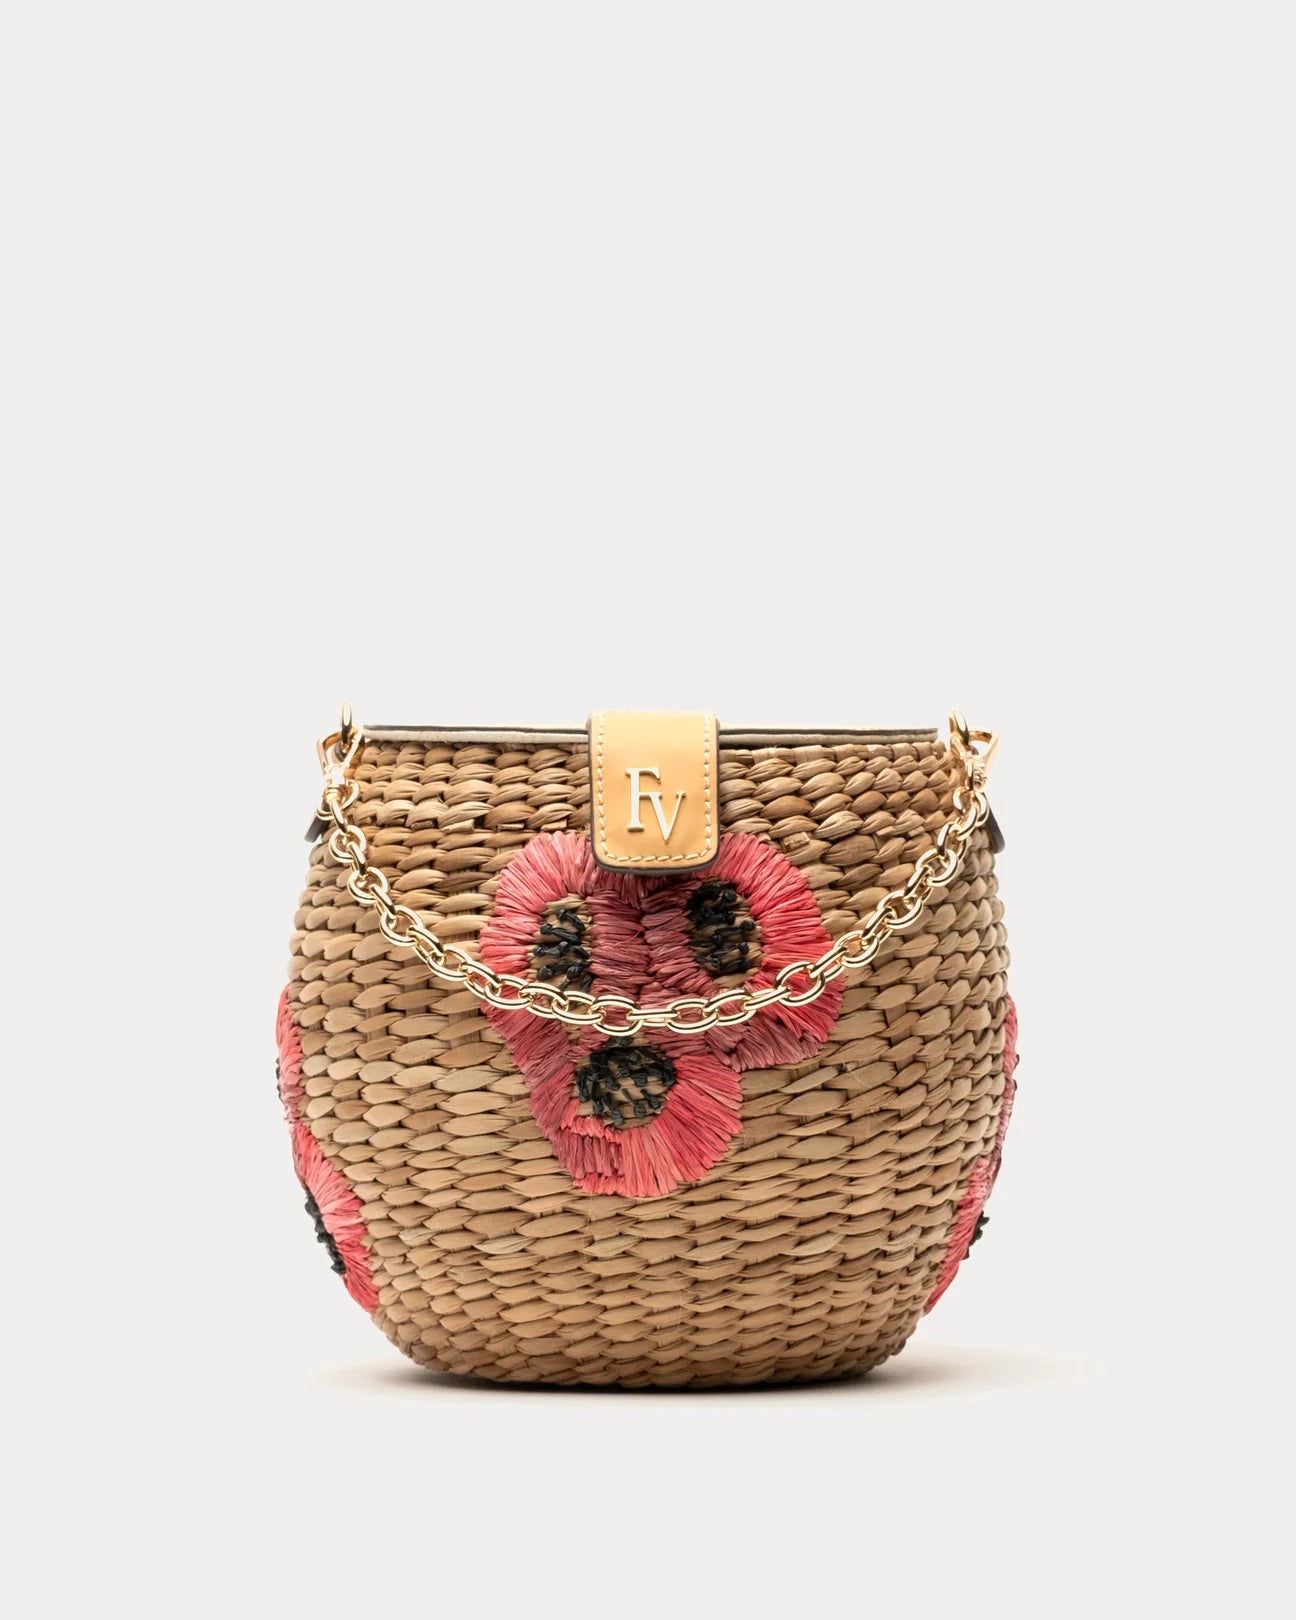 Frances Valentine Honeypot Basket Poppy